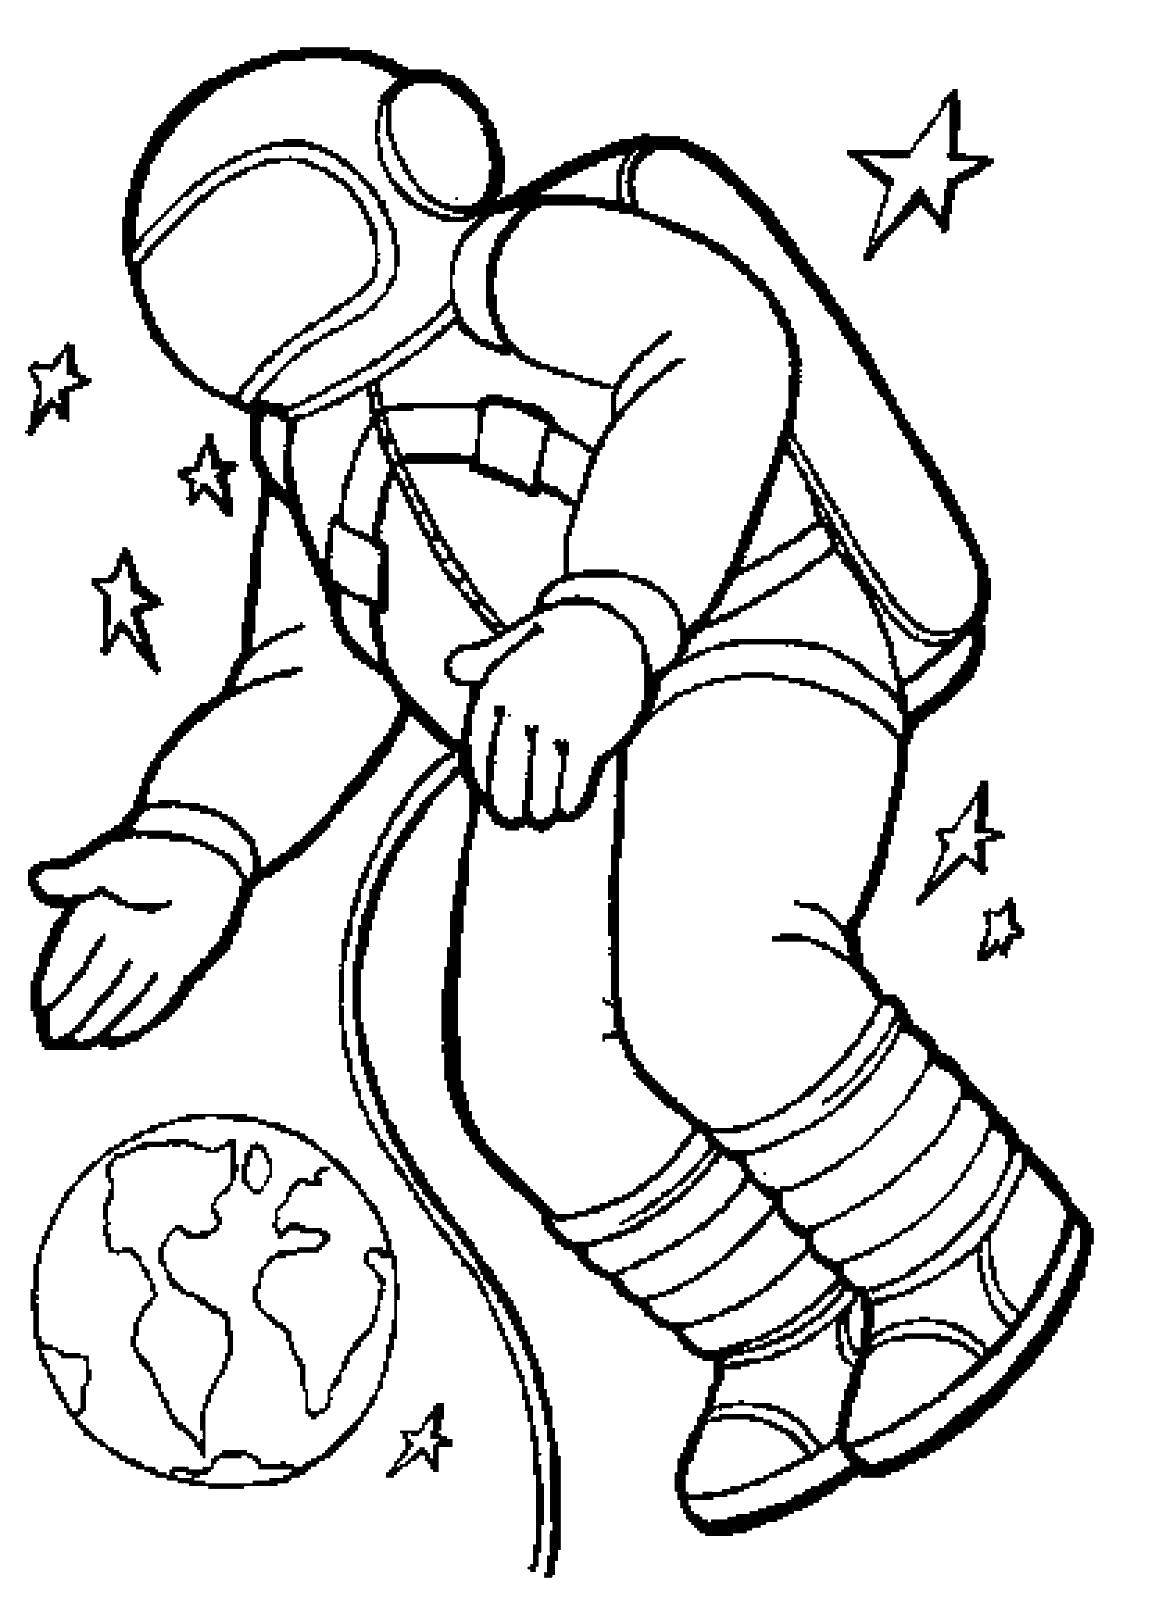 Раскраска космонавта в космическом костюме (ракеты)